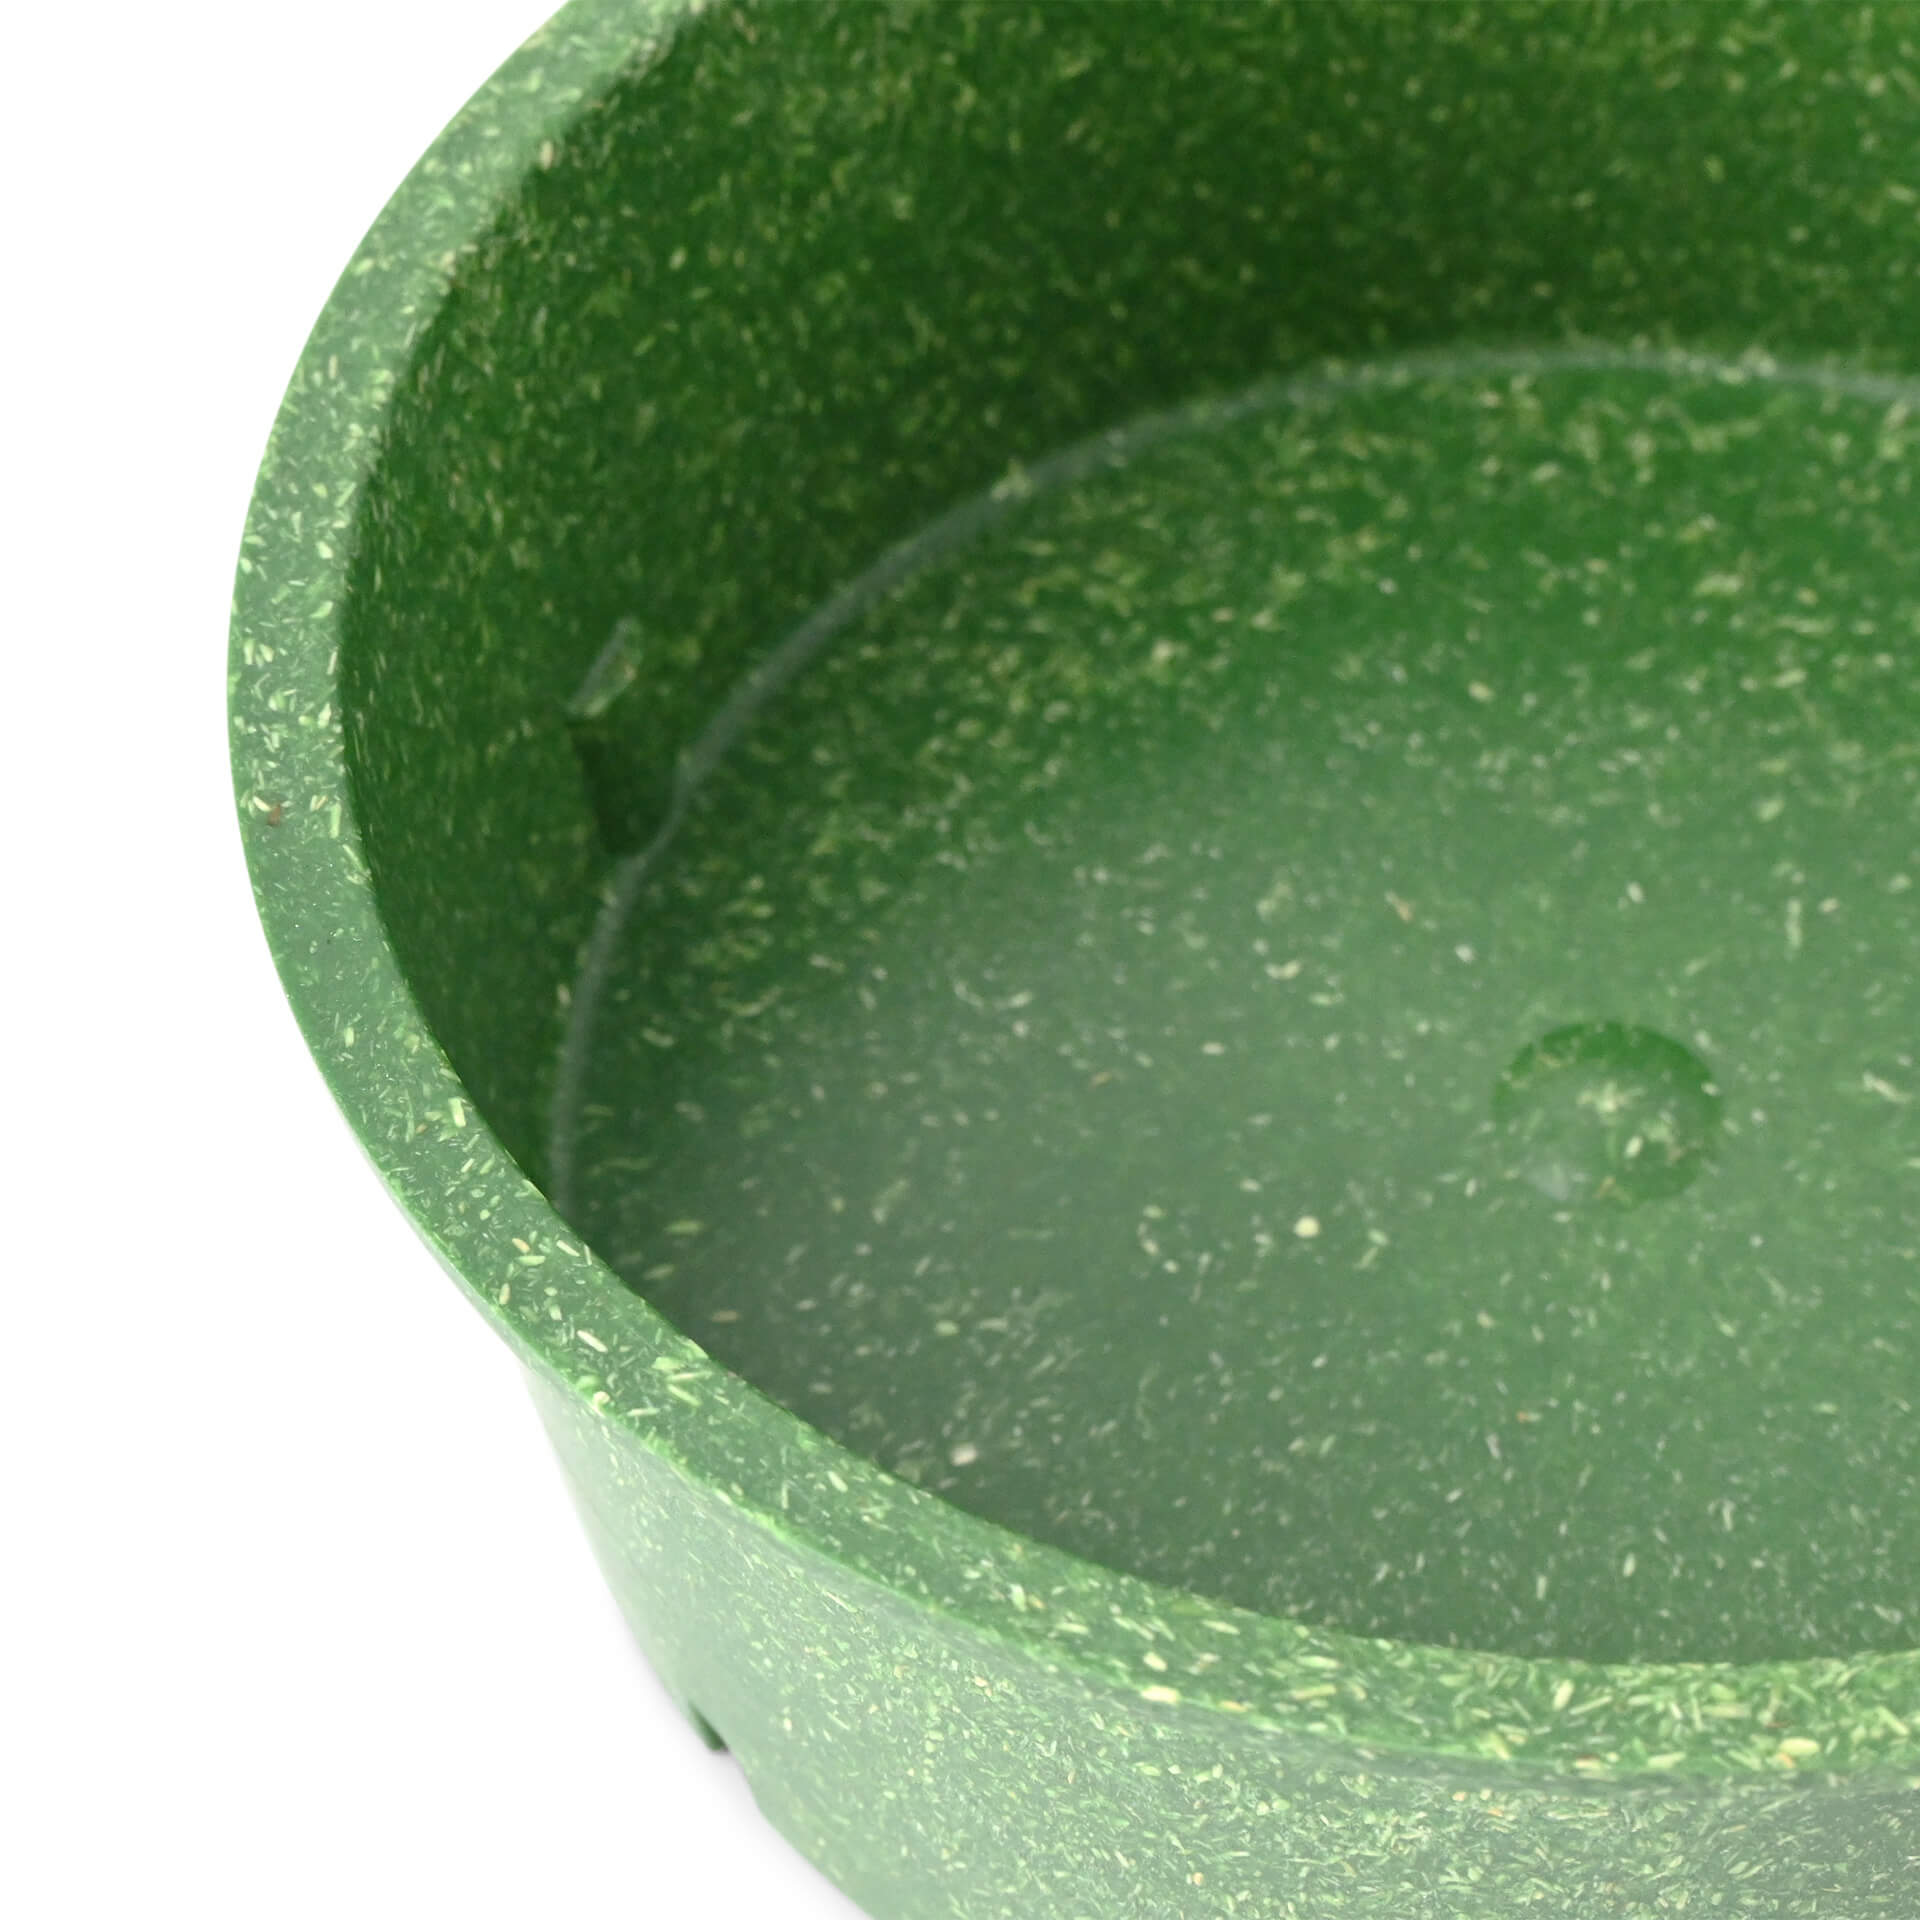 Mehrweg-Schalen "Häppy Bowl®" 650 ml, Ø 150 mm, Spinat / dunkelgrün